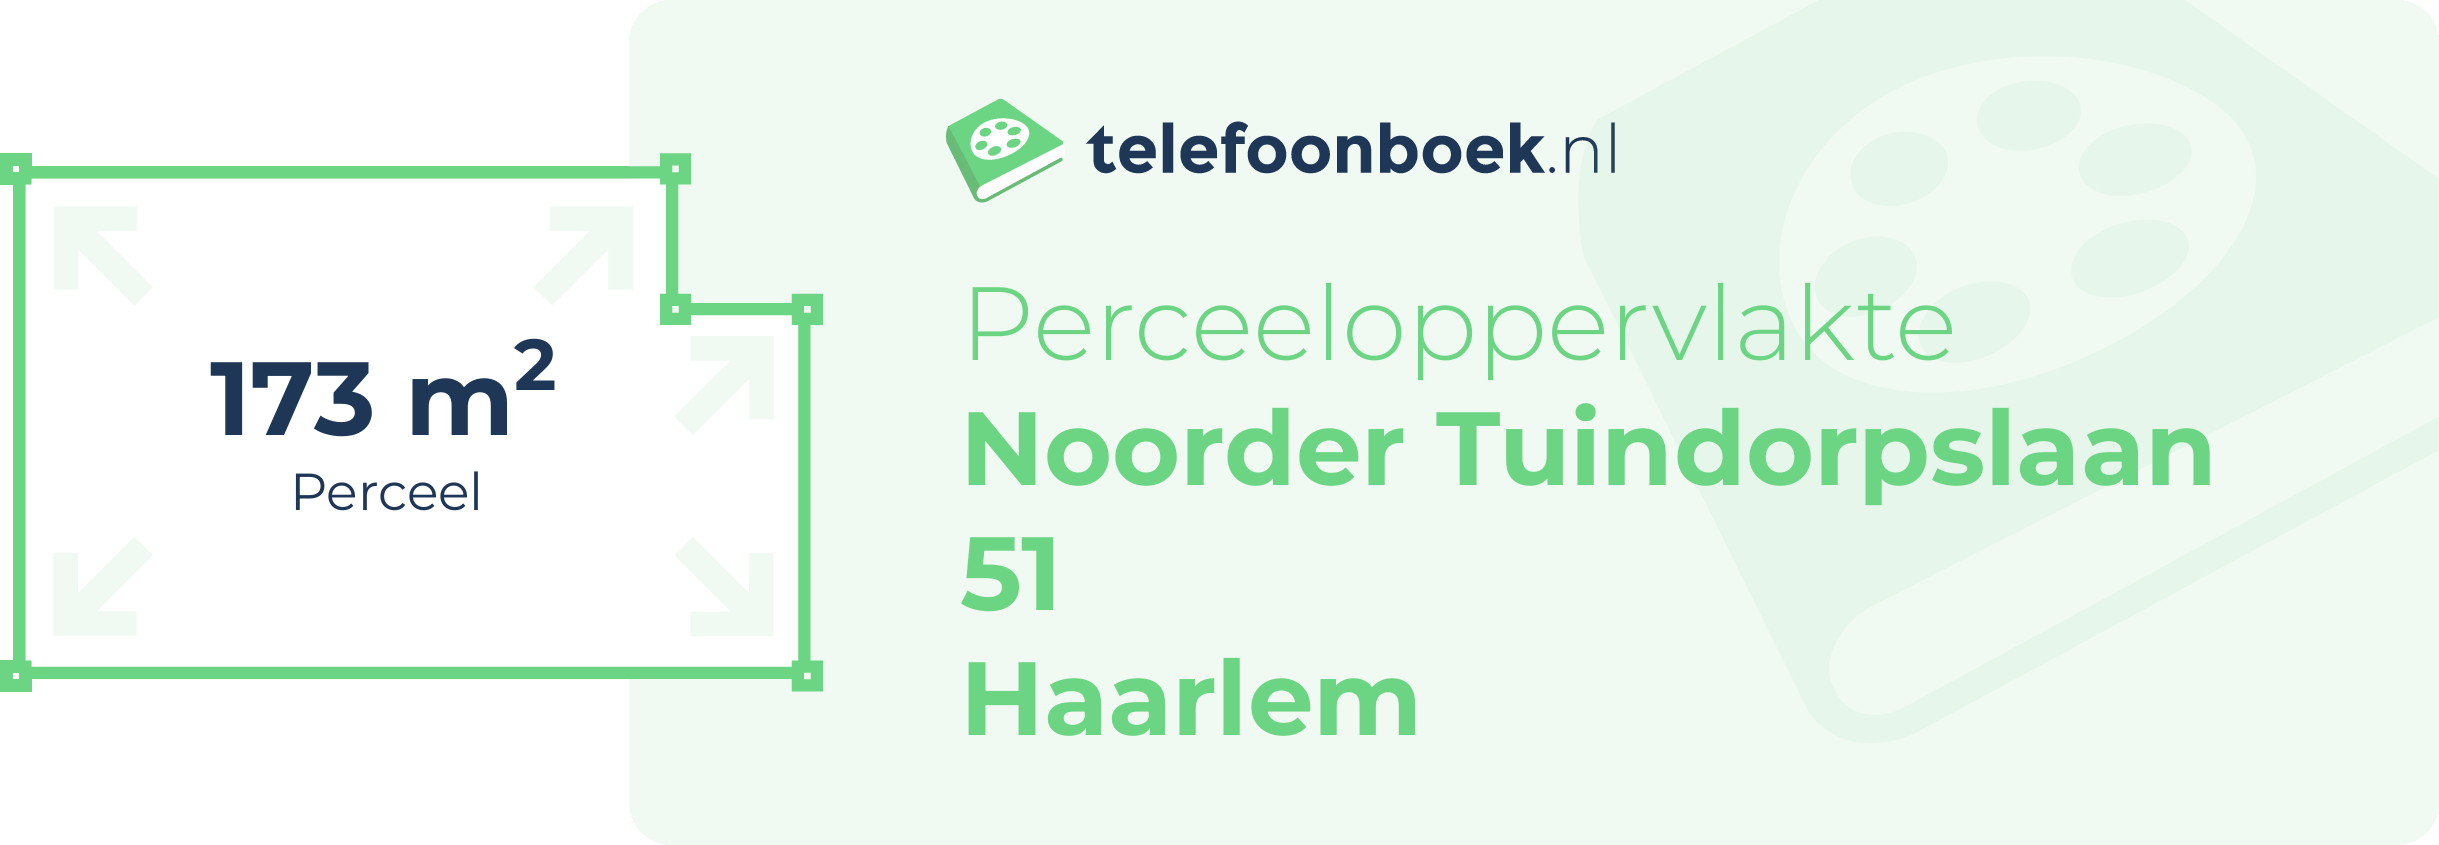 Perceeloppervlakte Noorder Tuindorpslaan 51 Haarlem